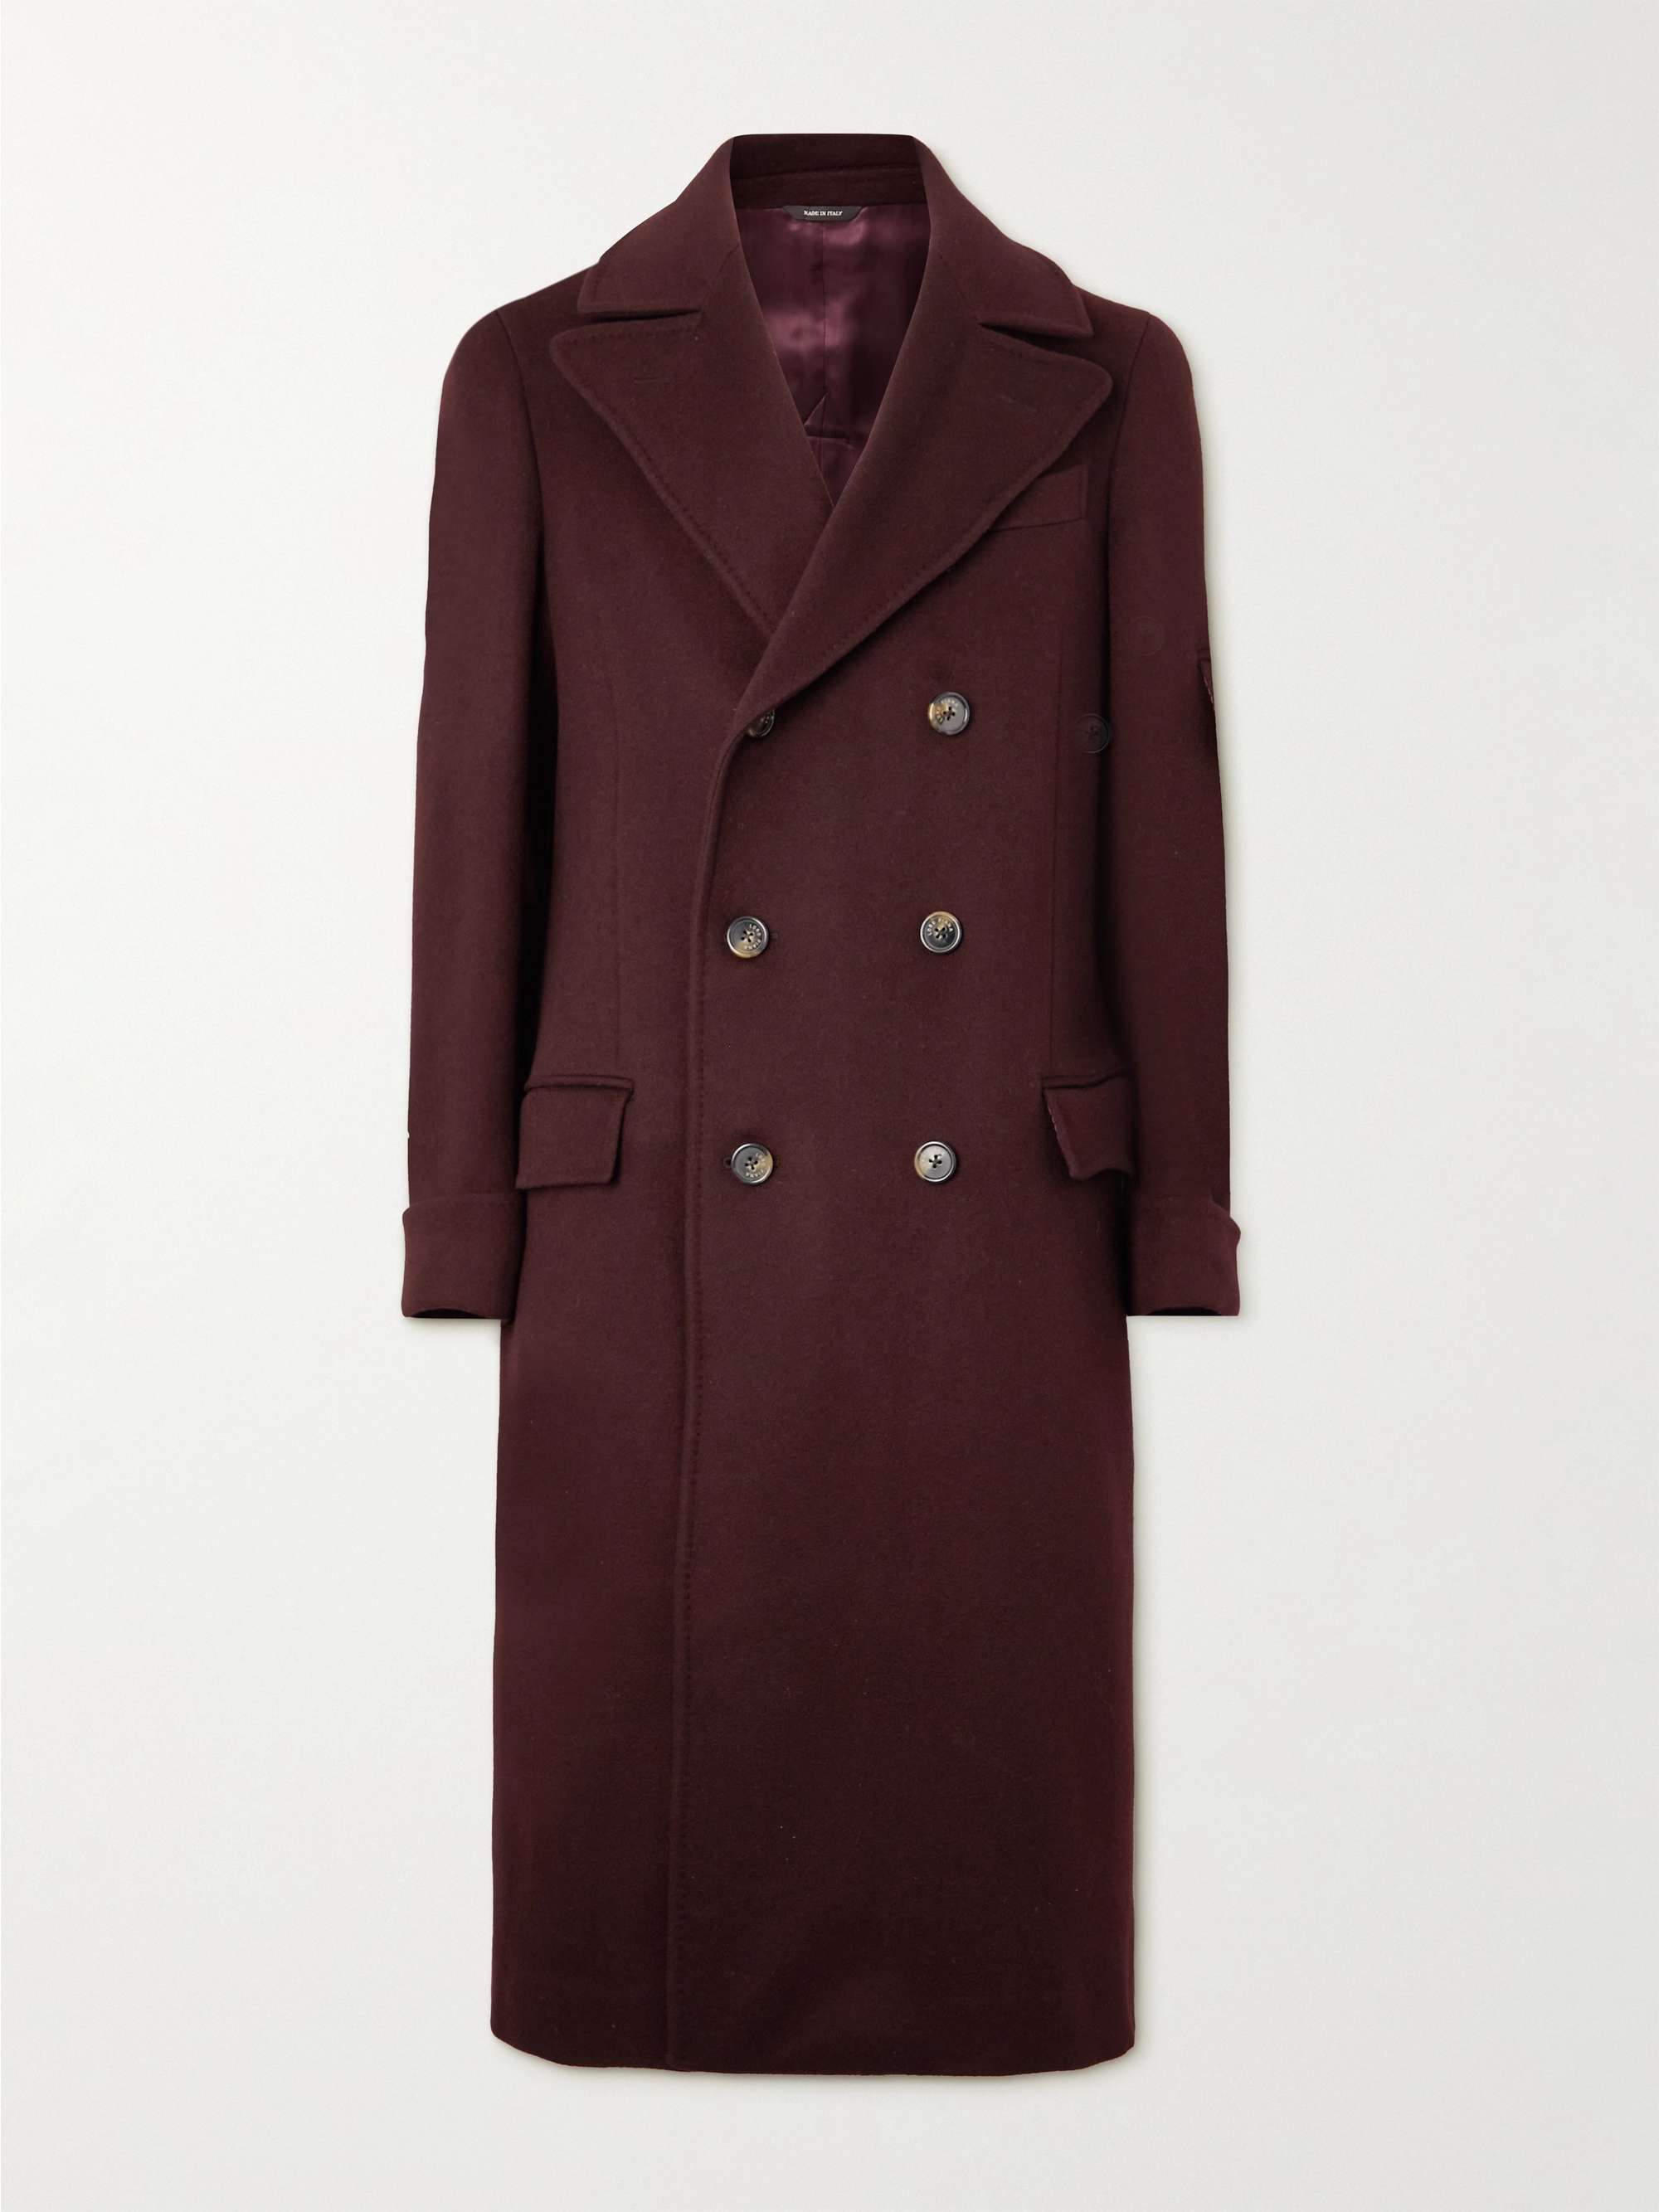 PAUL SMITH Epsom Wool and Cashmere-Blend Felt Overcoat | MR PORTER